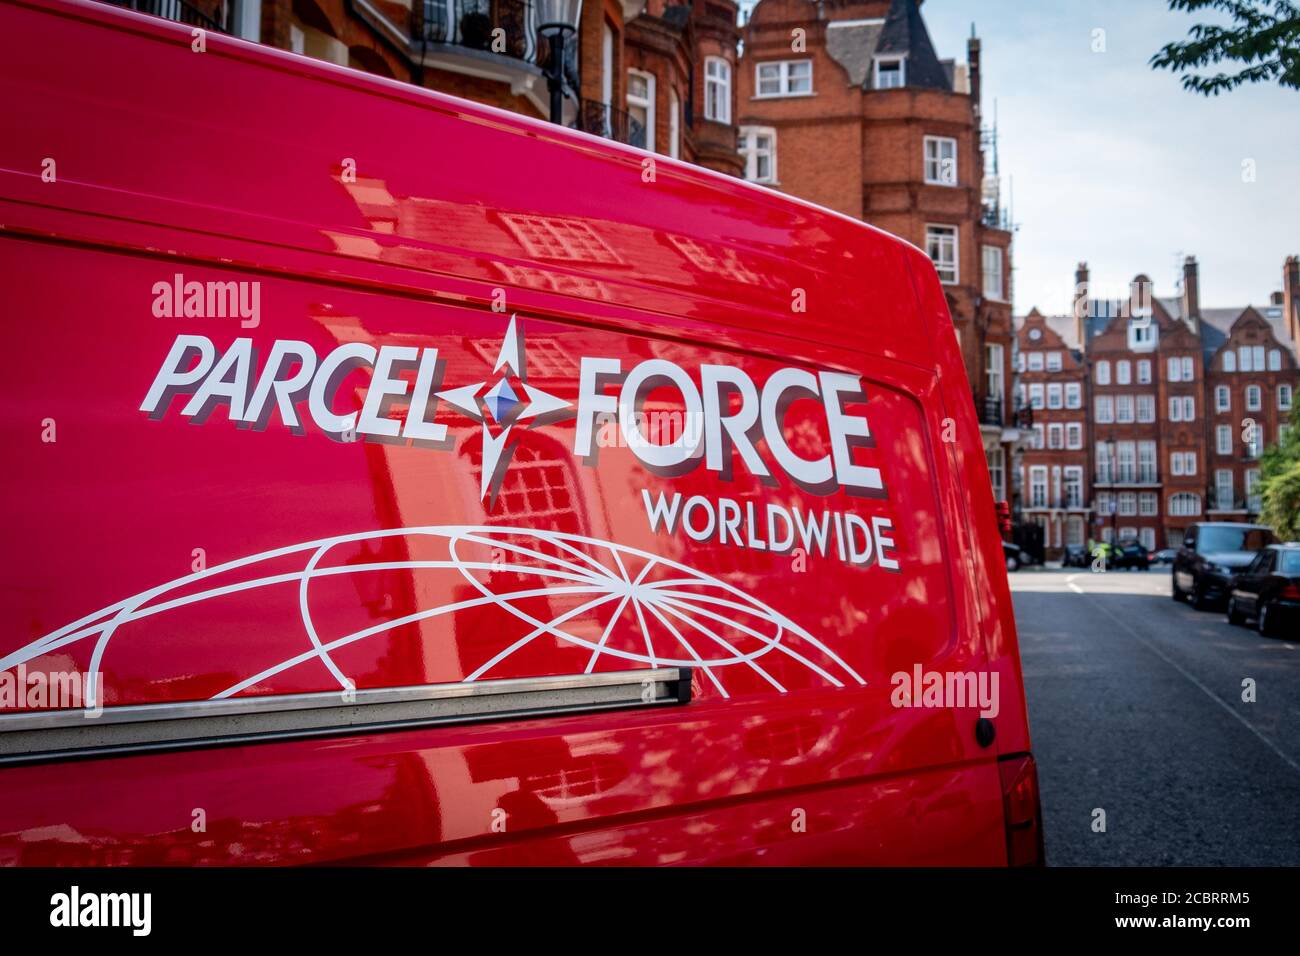 Londra- Parcelforce, un servizio di posta inglese Foto Stock